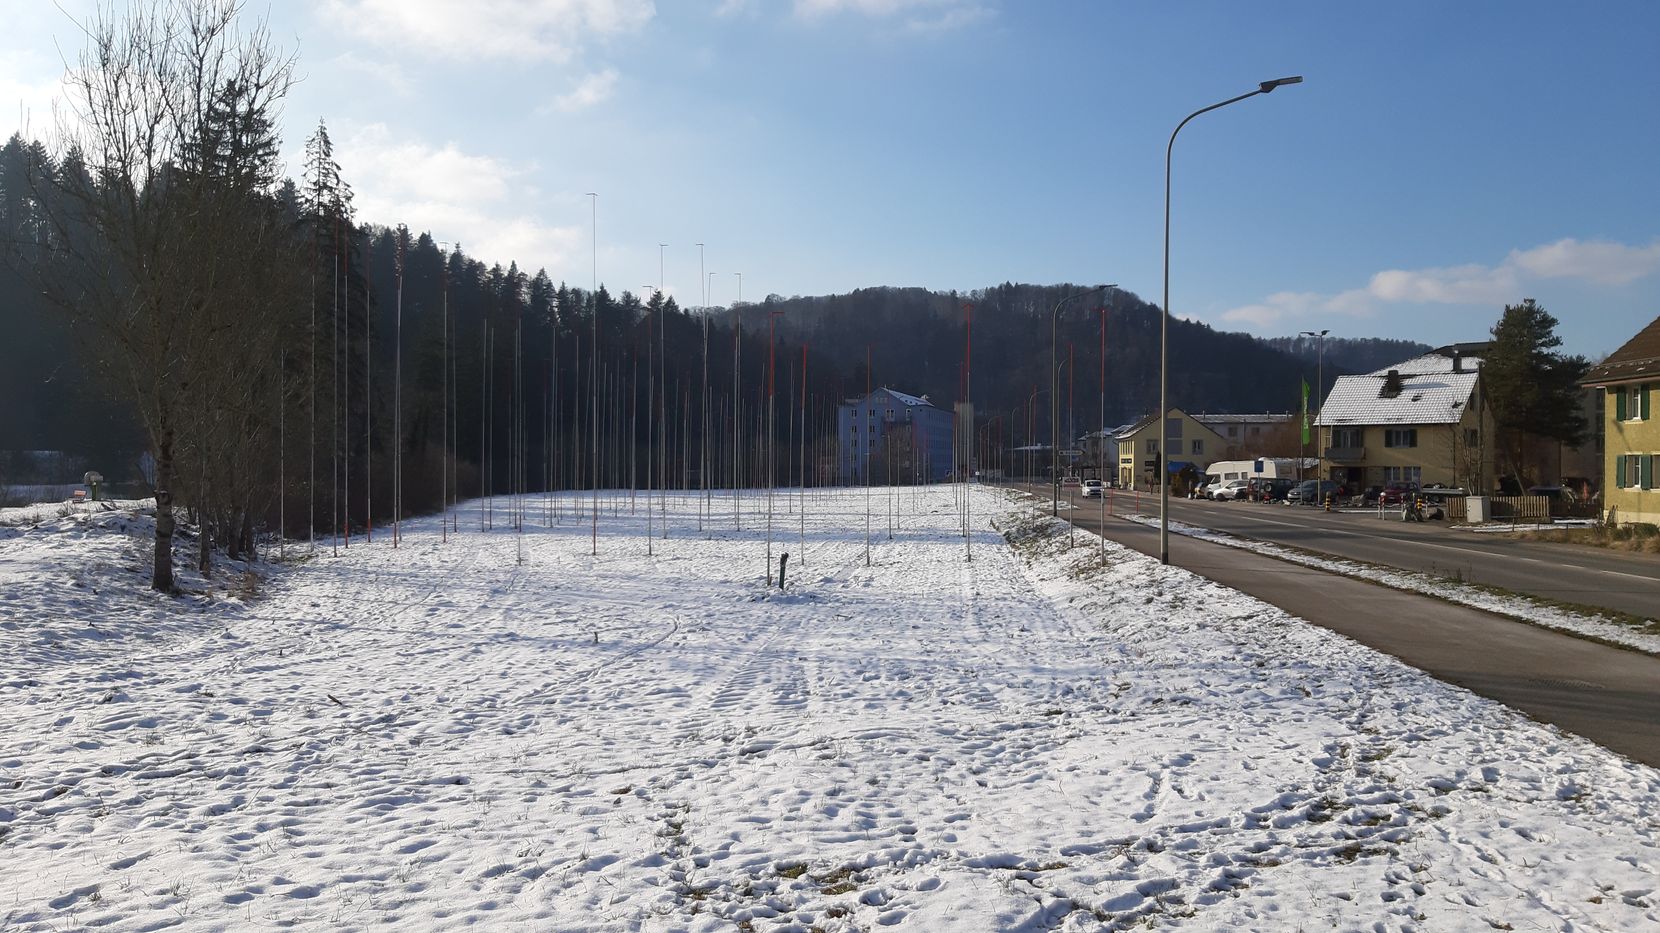 Man sieht eine schneebedeckte Wiese mit Bauvisieren darauf. Links daneben ist ein kleiner Wald, rechts daneben die Kantonsstrasse.